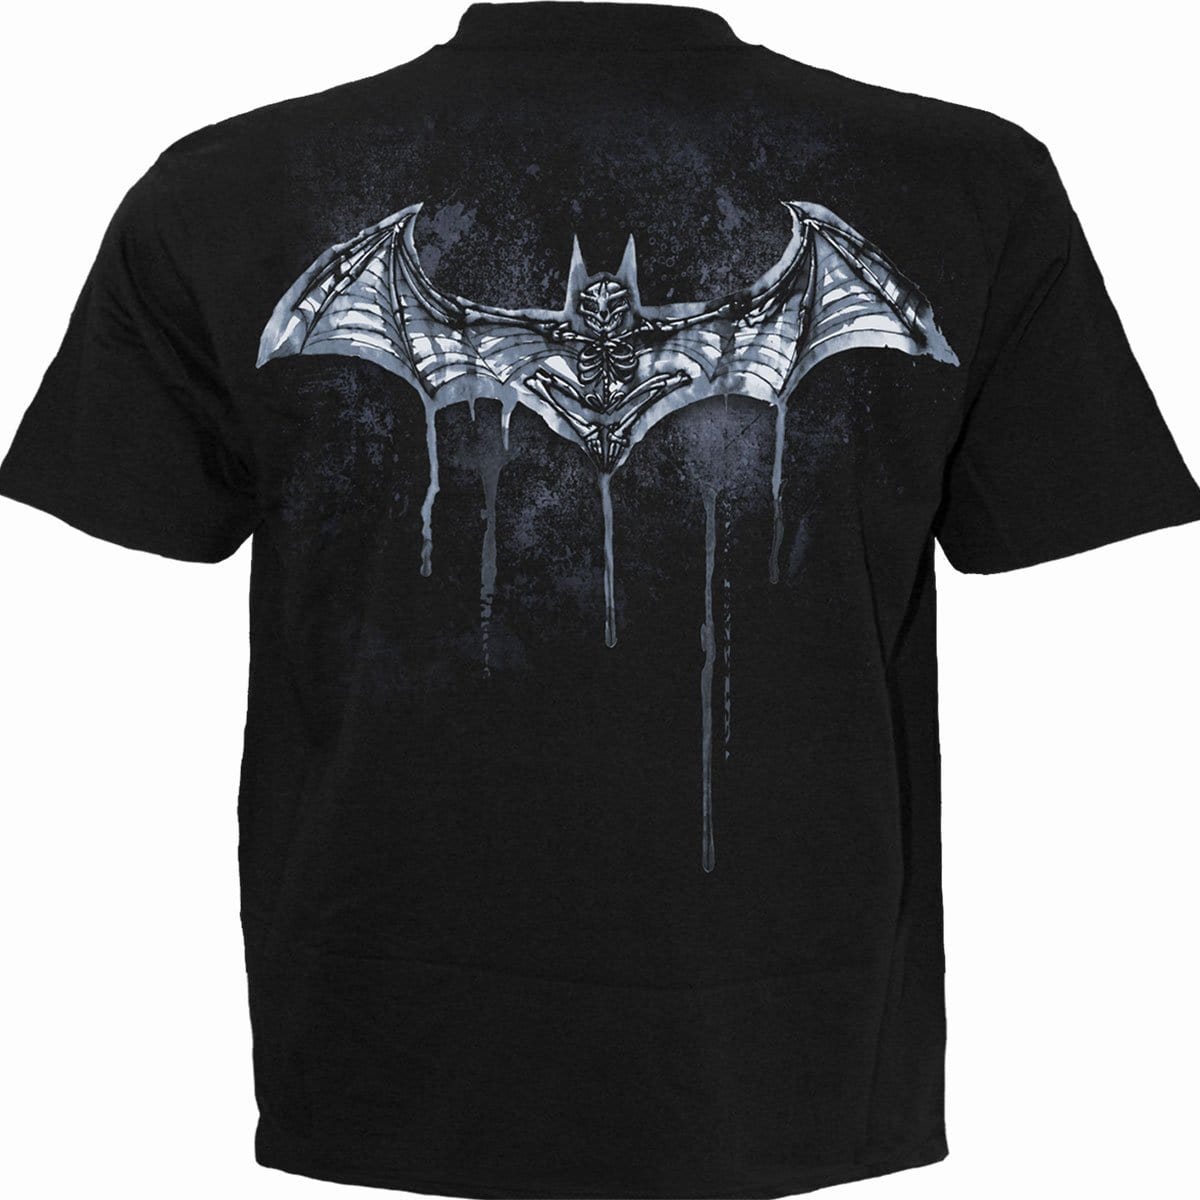 BATMAN - NOCTURNAL - T-Shirt Black - Spiral USA